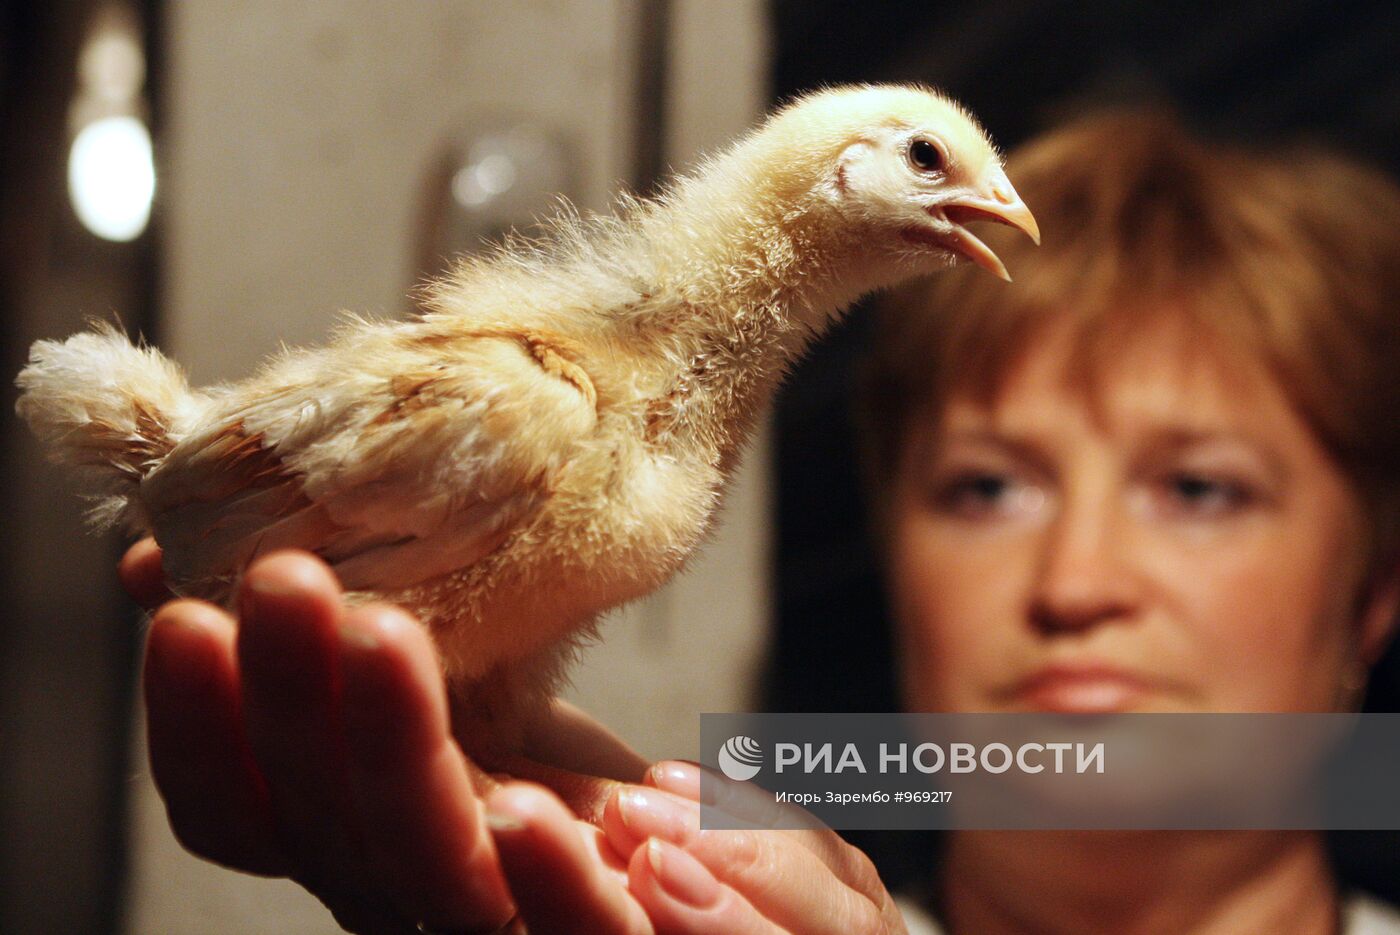 Работа Гурьевской птицефабрики в Калининградской области